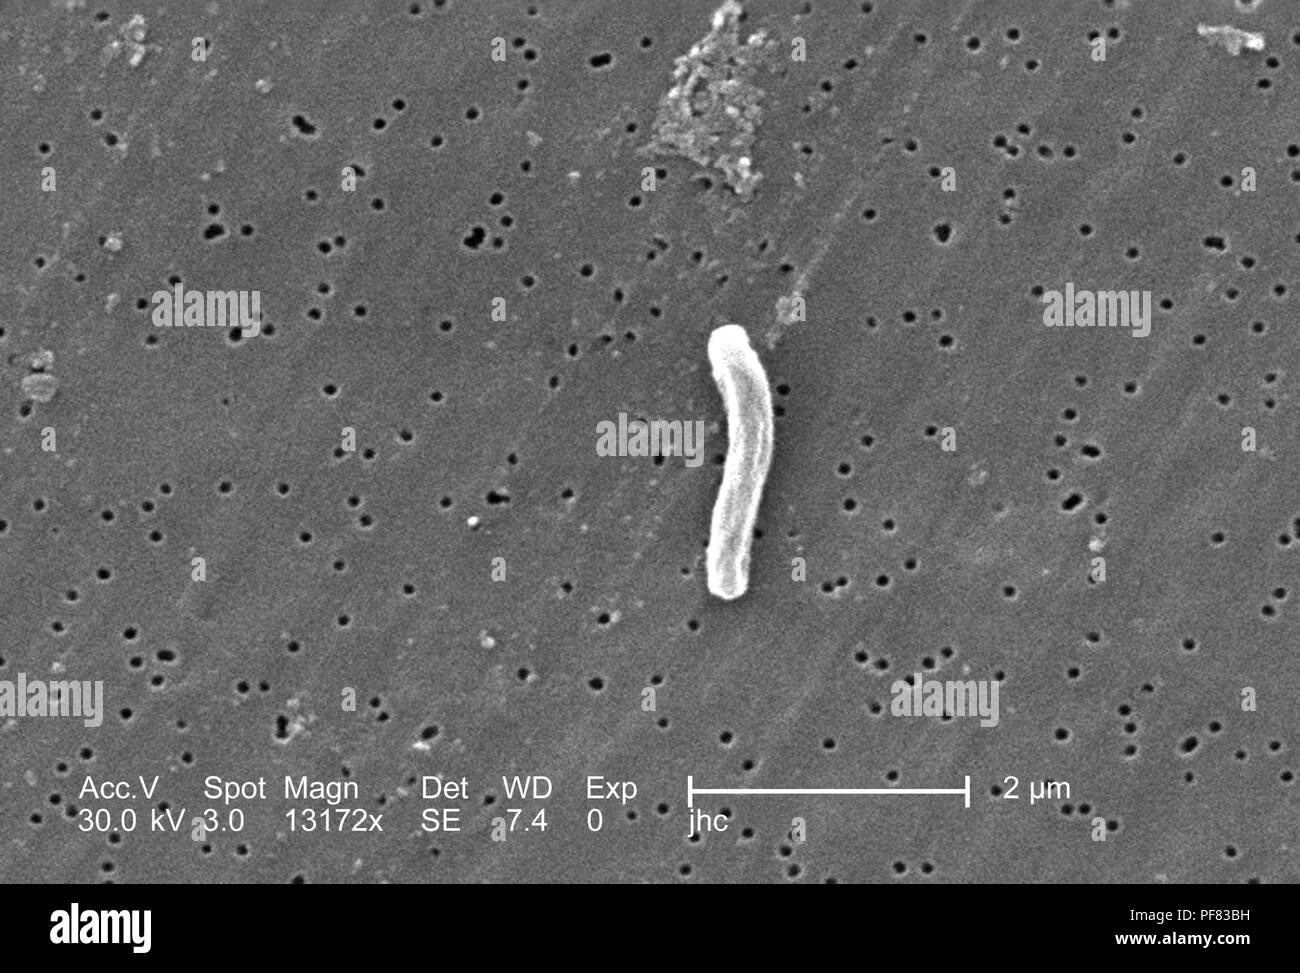 Unico Gram-positivi di Mycobacterium tuberculosis batterio ha rivelato nel 13172x scansione ingrandita al microscopio elettronico (SEM) immagine, 2006. Immagine cortesia di centri per il controllo delle malattie (CDC) / Ray Butler, MS, Janice Haney Carr. () Foto Stock